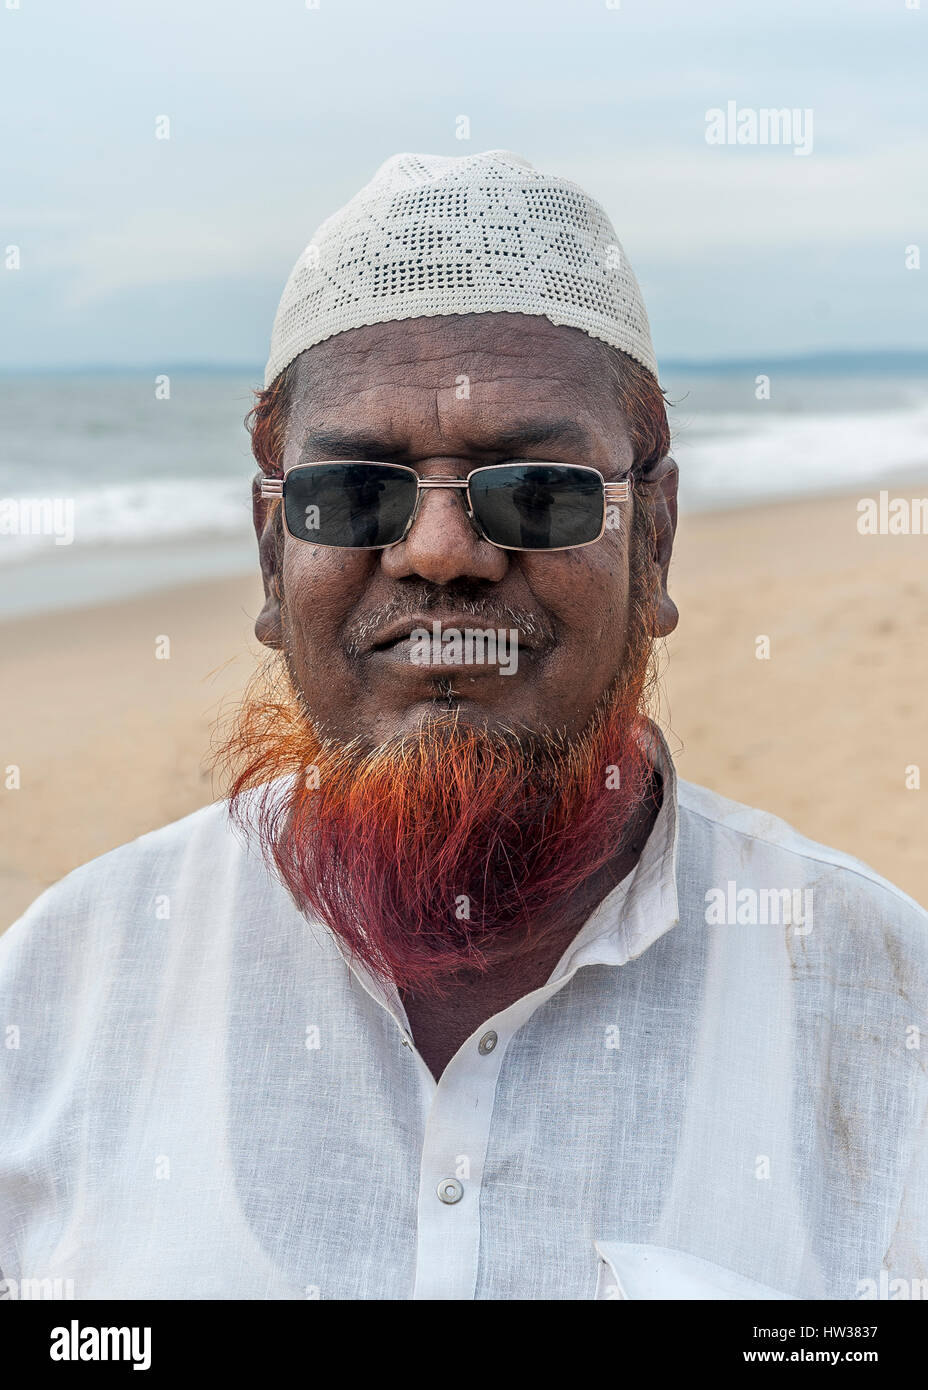 Colva, Goa, India - 27 ottobre 2014 Hindu-Muslim cui tinti barba dice che egli ha reso il Hajj, ie pellegrinaggio alla Mecca. Foto Stock